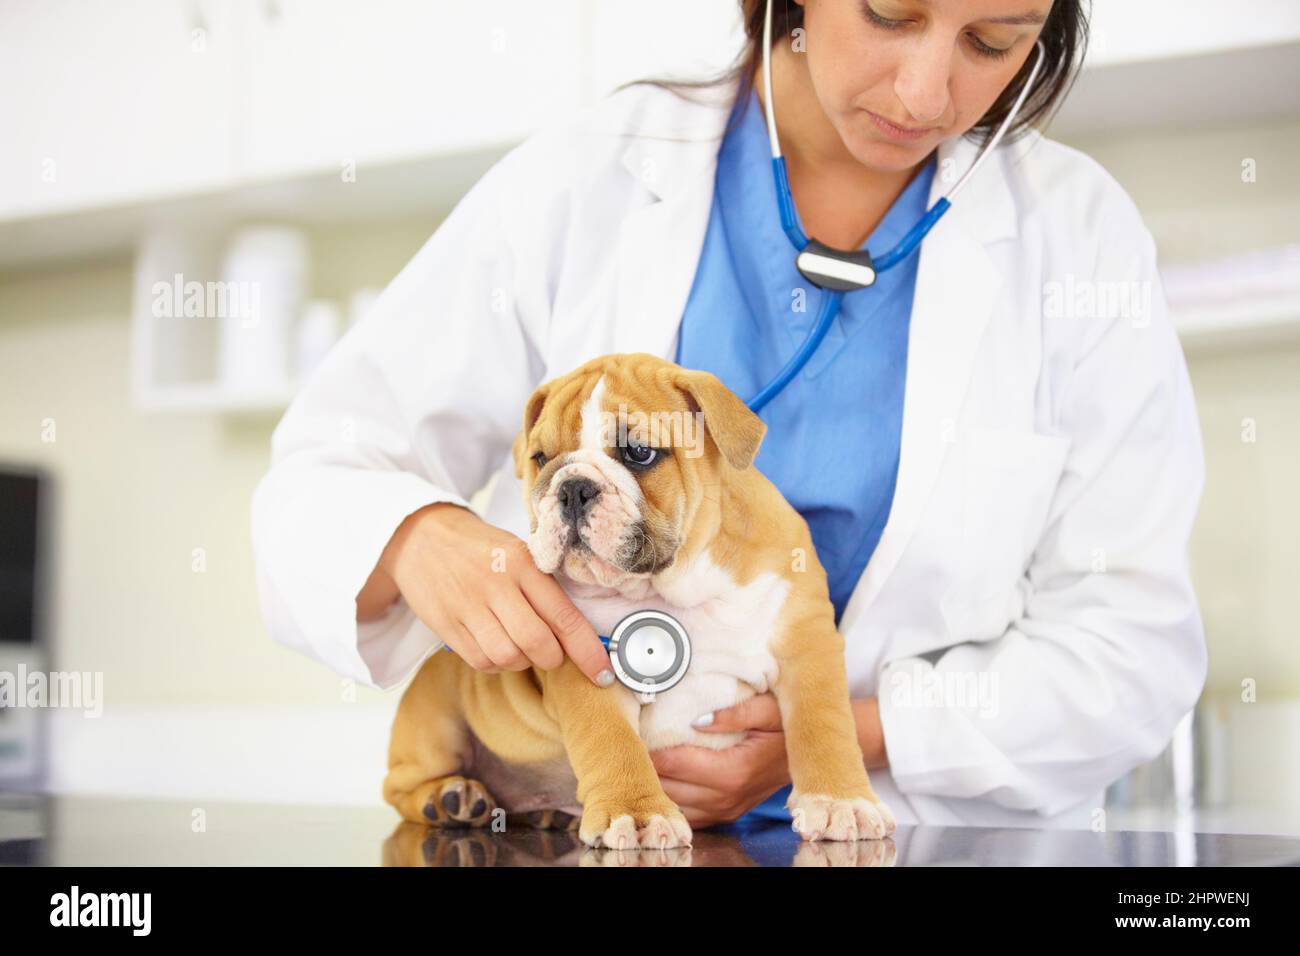 Achten Sie darauf, dass es ein gesunder kleiner Kerl. Ausgeschnittene Aufnahme eines Tierarztes, der versucht, dem Herzschlag einer Bulldogge-Puppe zuzuhören. Stockfoto